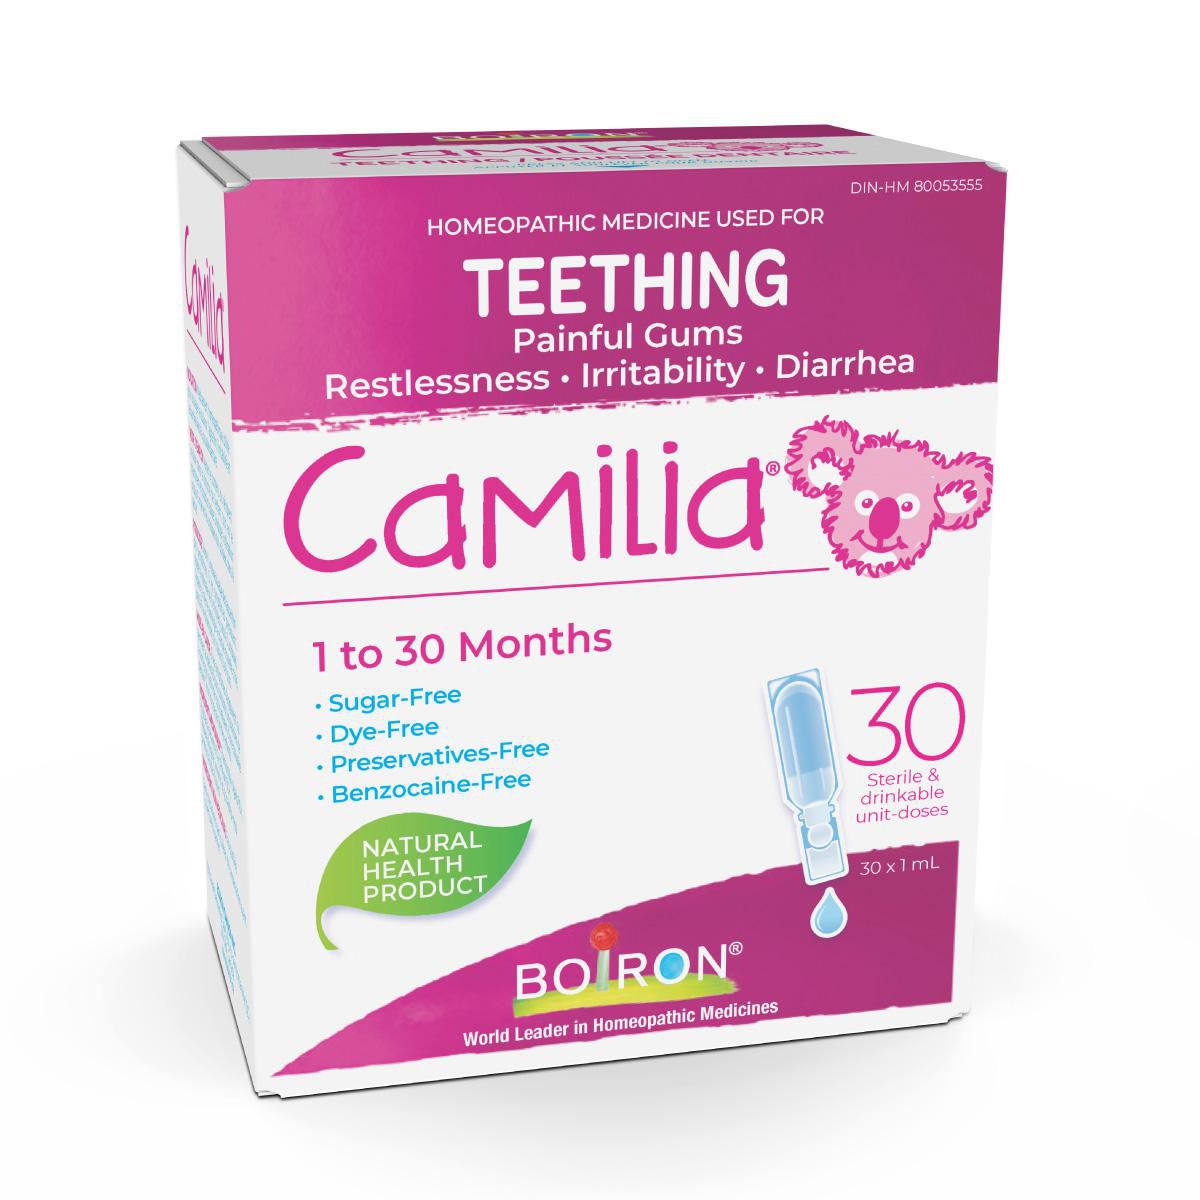 Camilia® pour la poussée dentaire